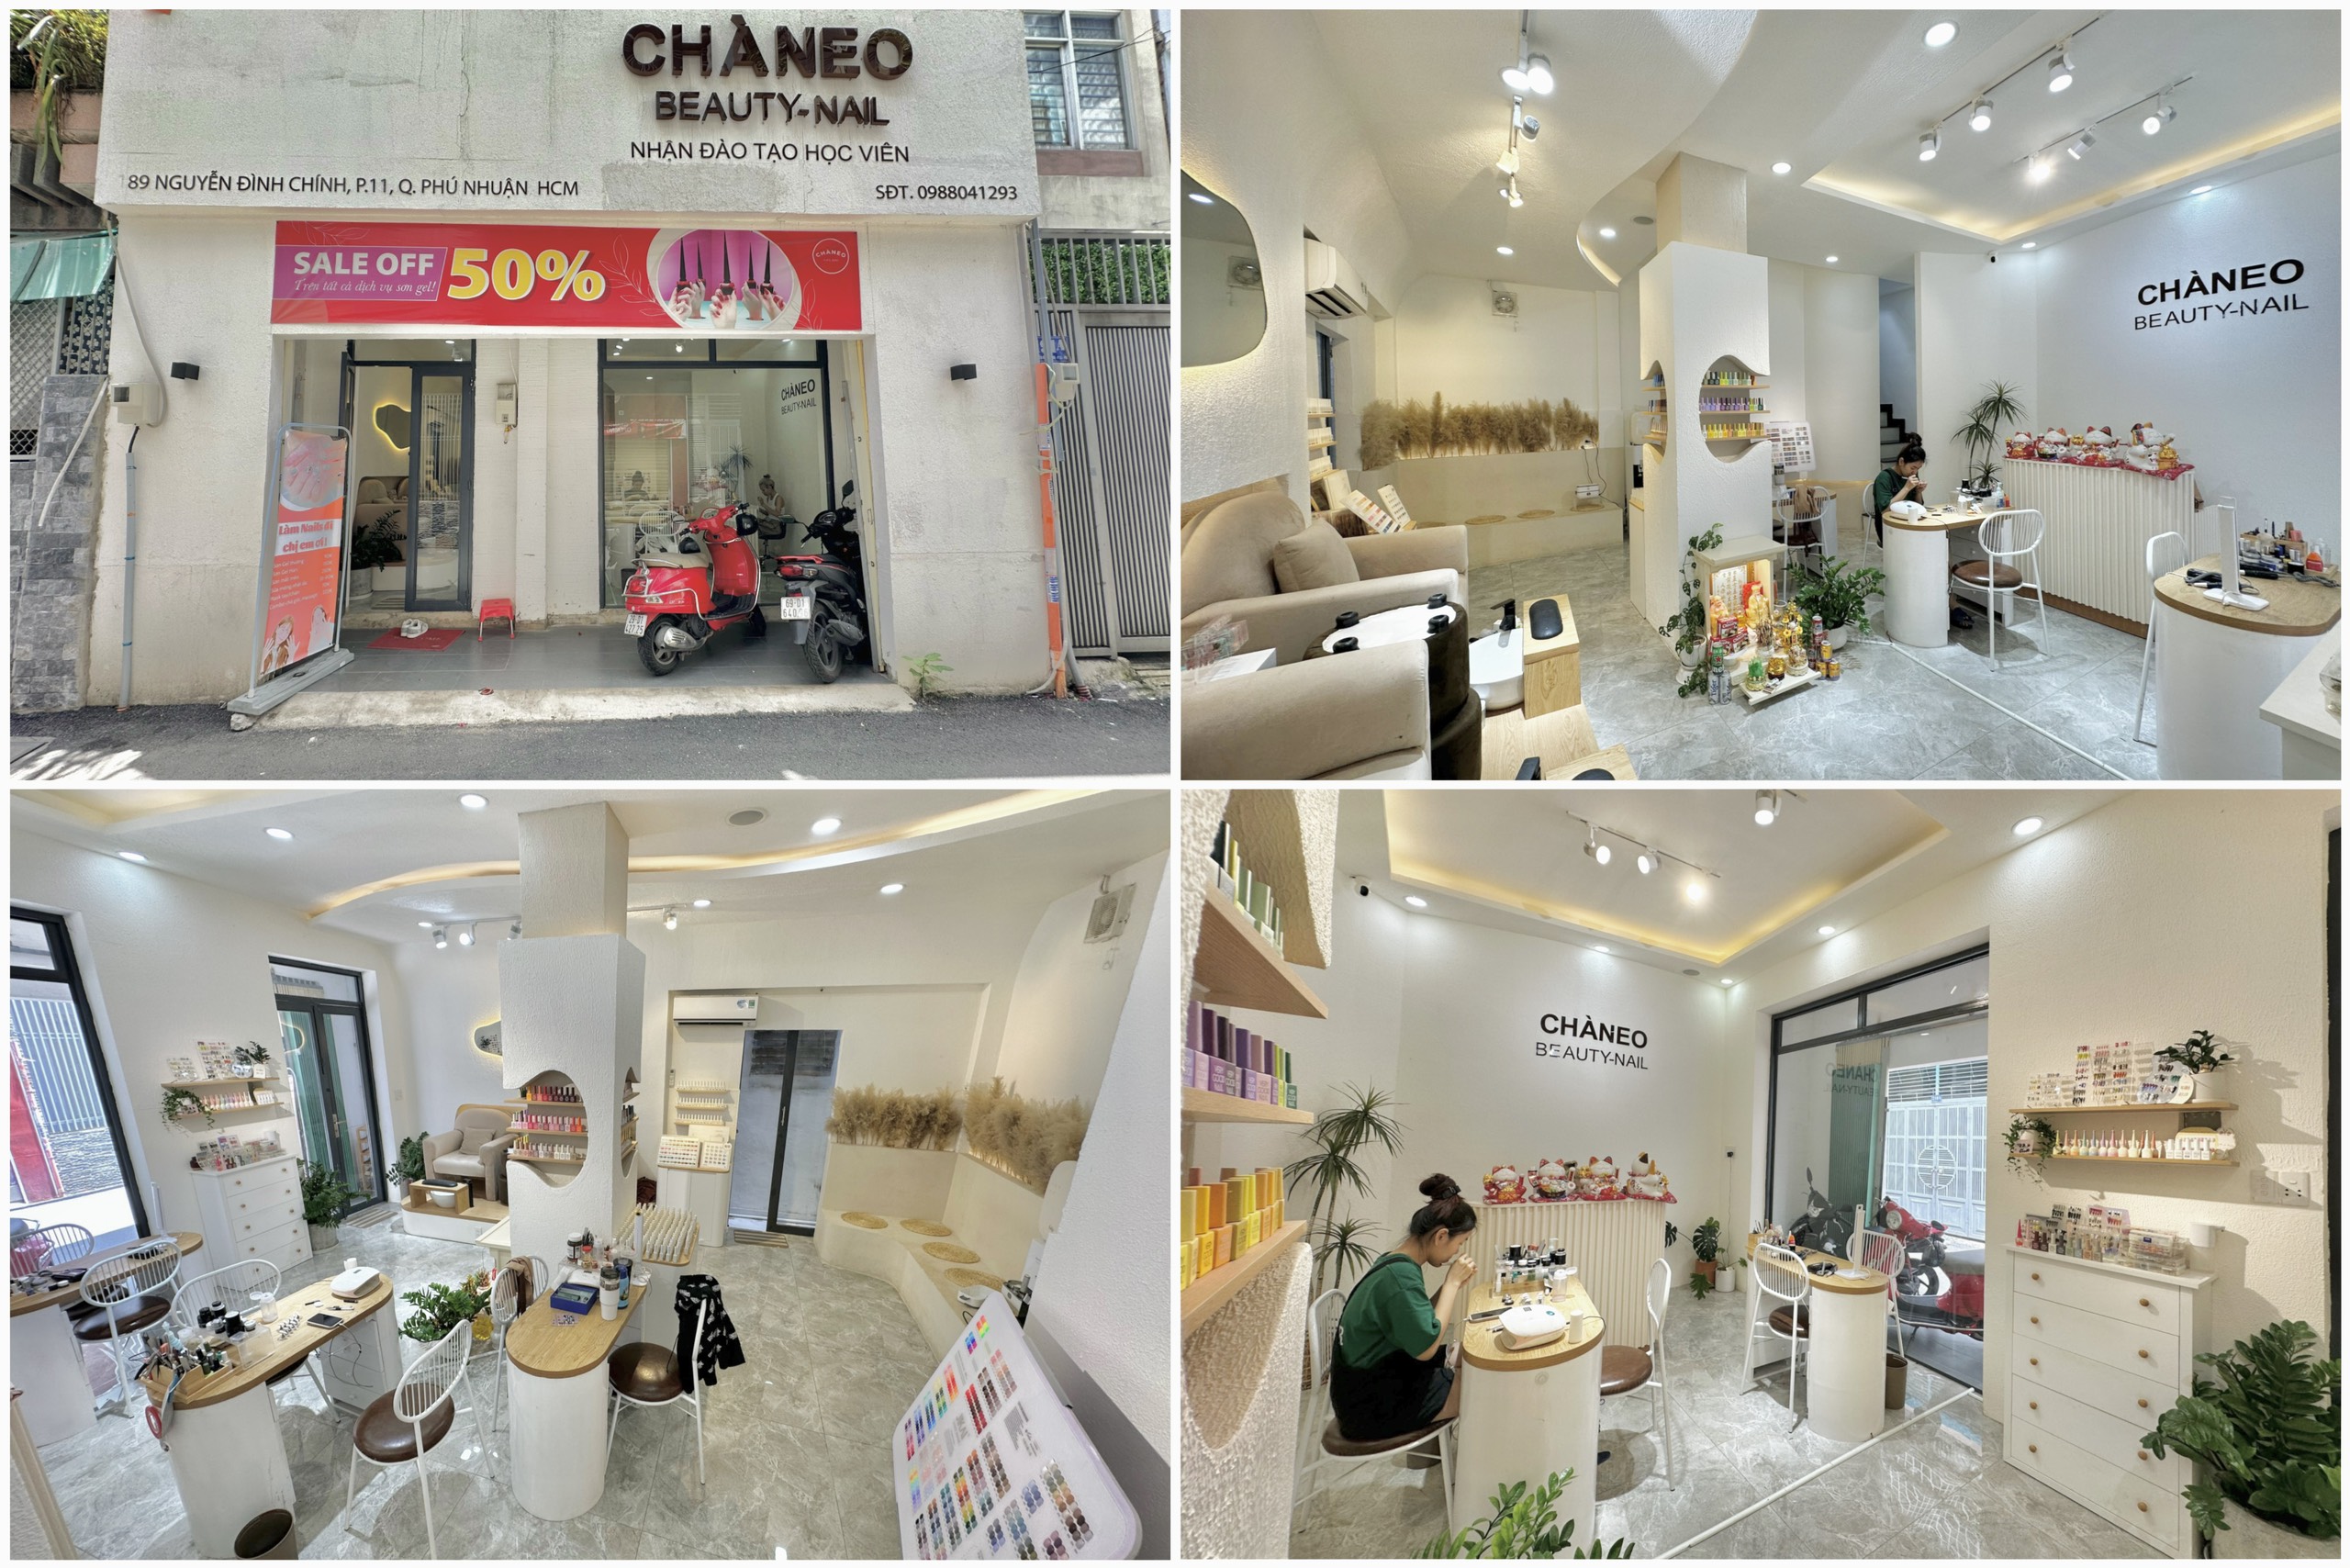 CHÀNEO”, Tiệm nail cực viral trên TikTok và là địa điểm check in của rất nhiều Kols, Nghệ sĩ nổi tiếng.